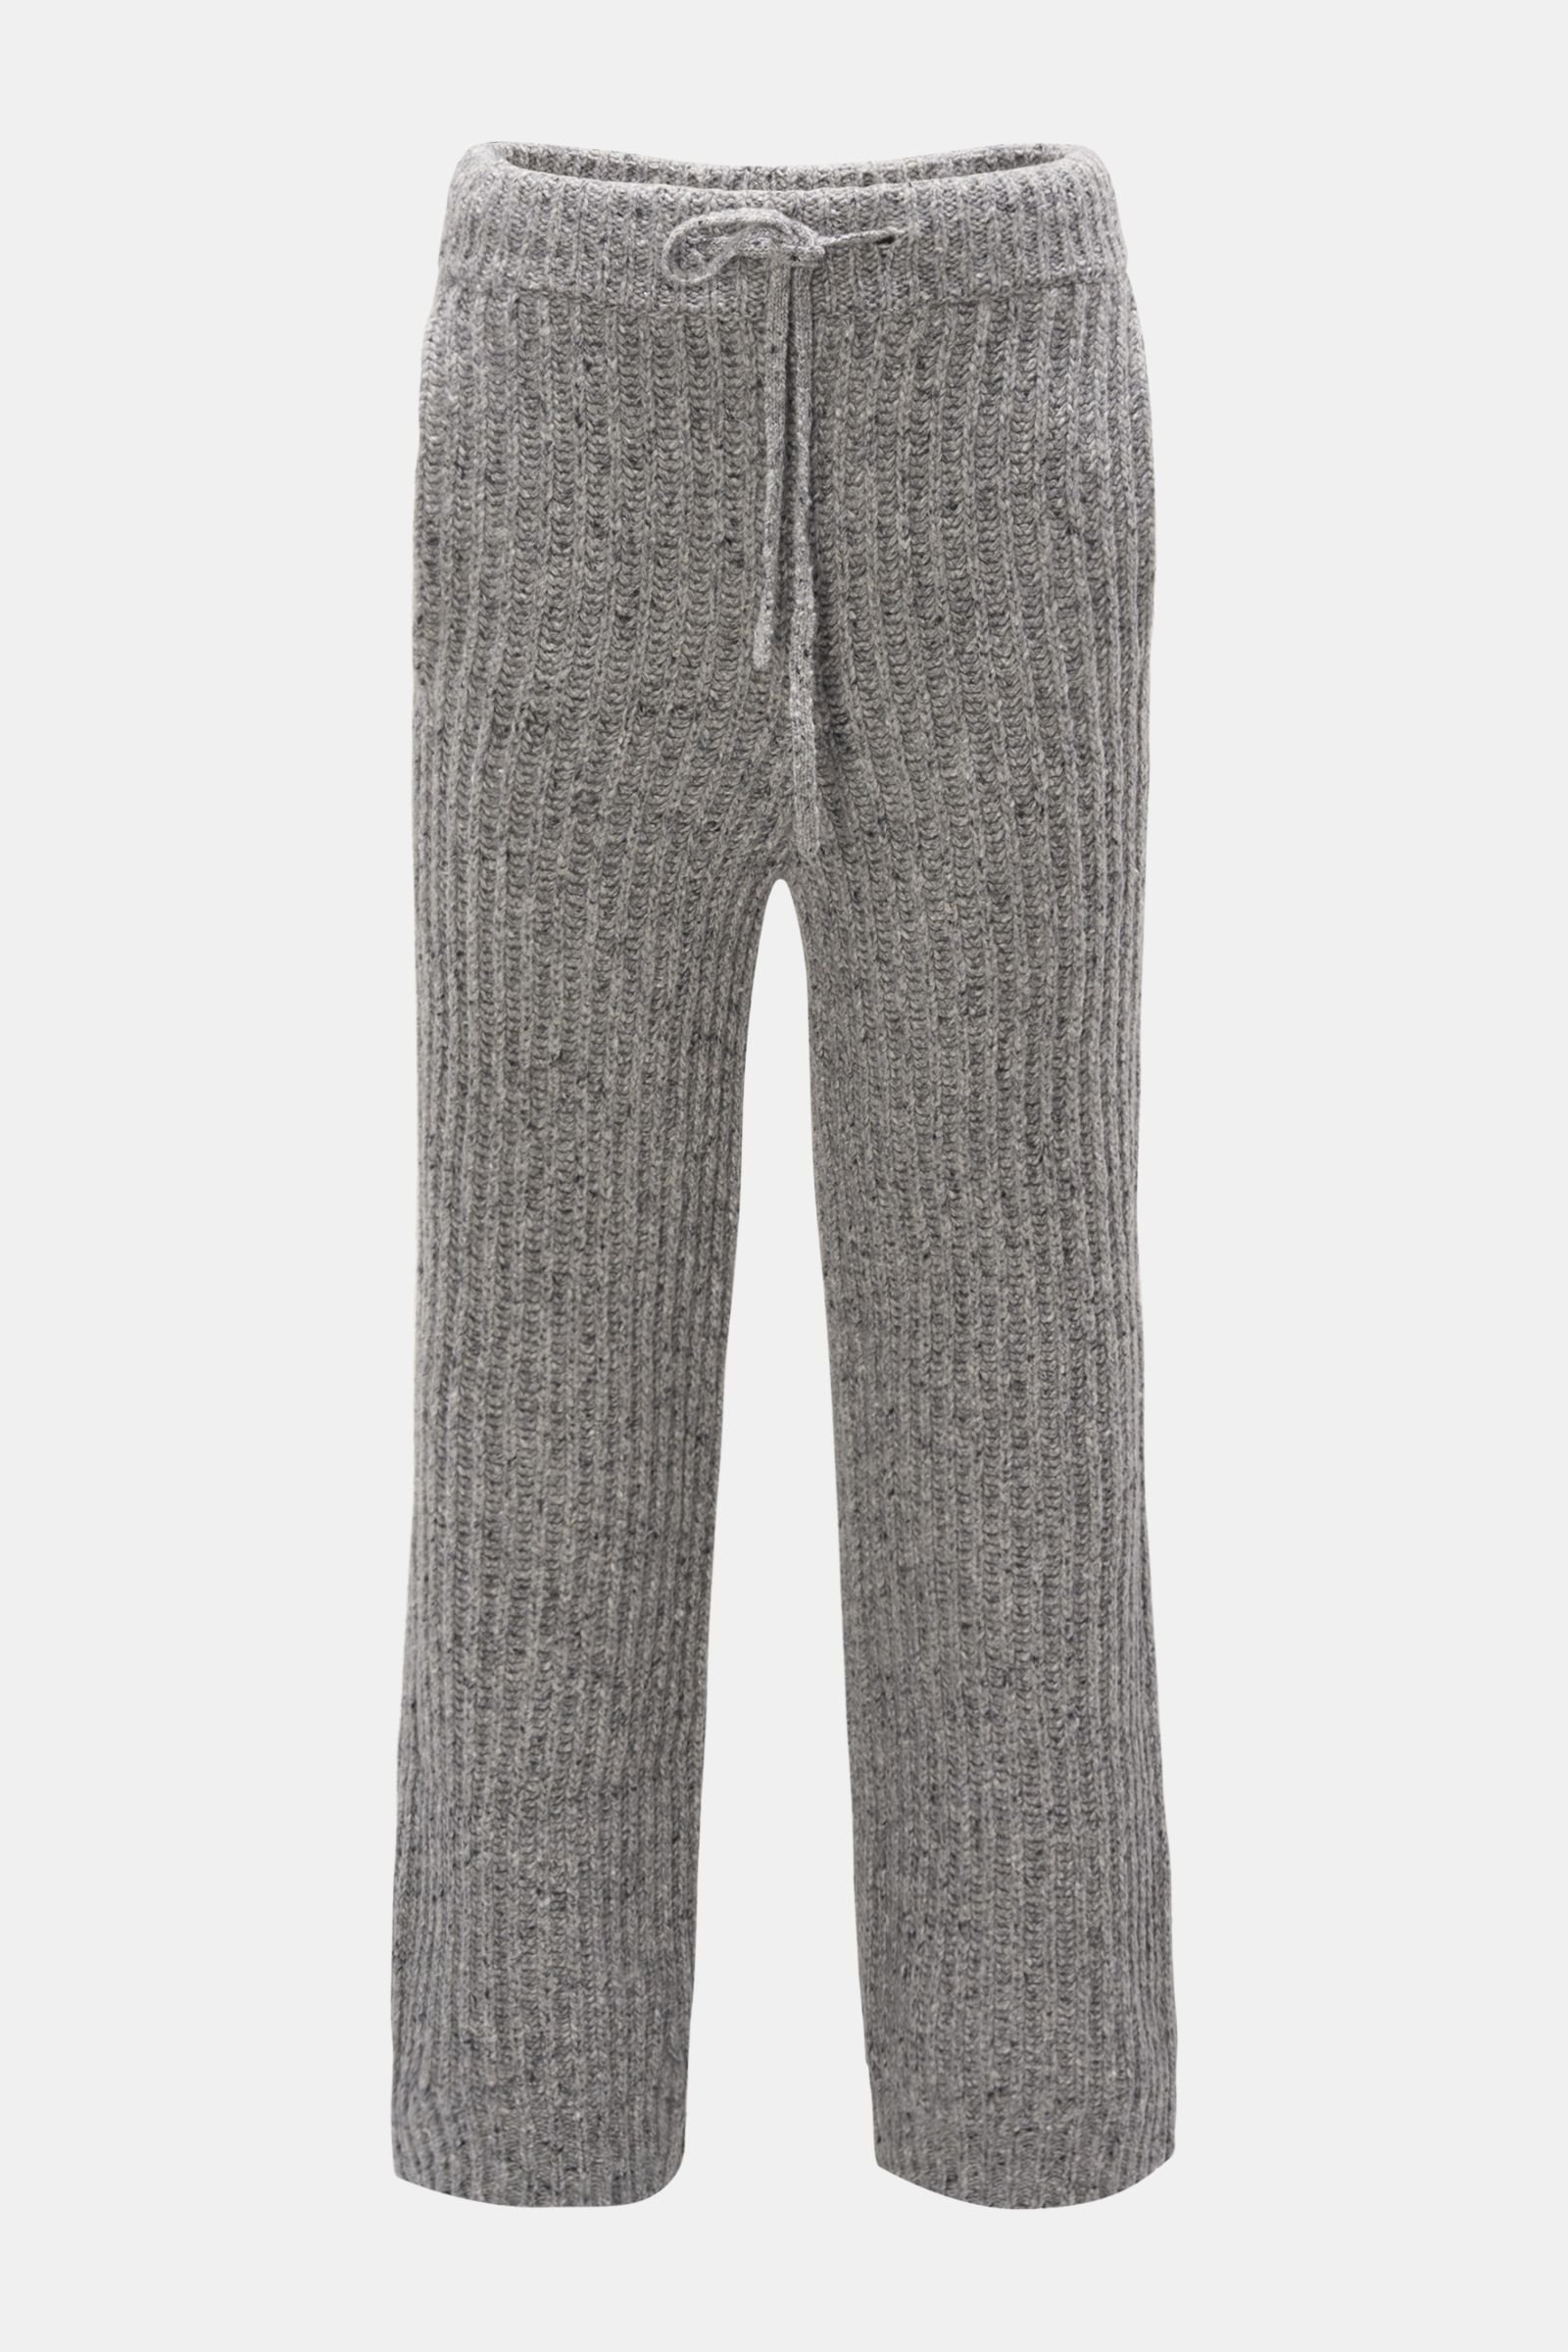 Knit jogger pants grey 